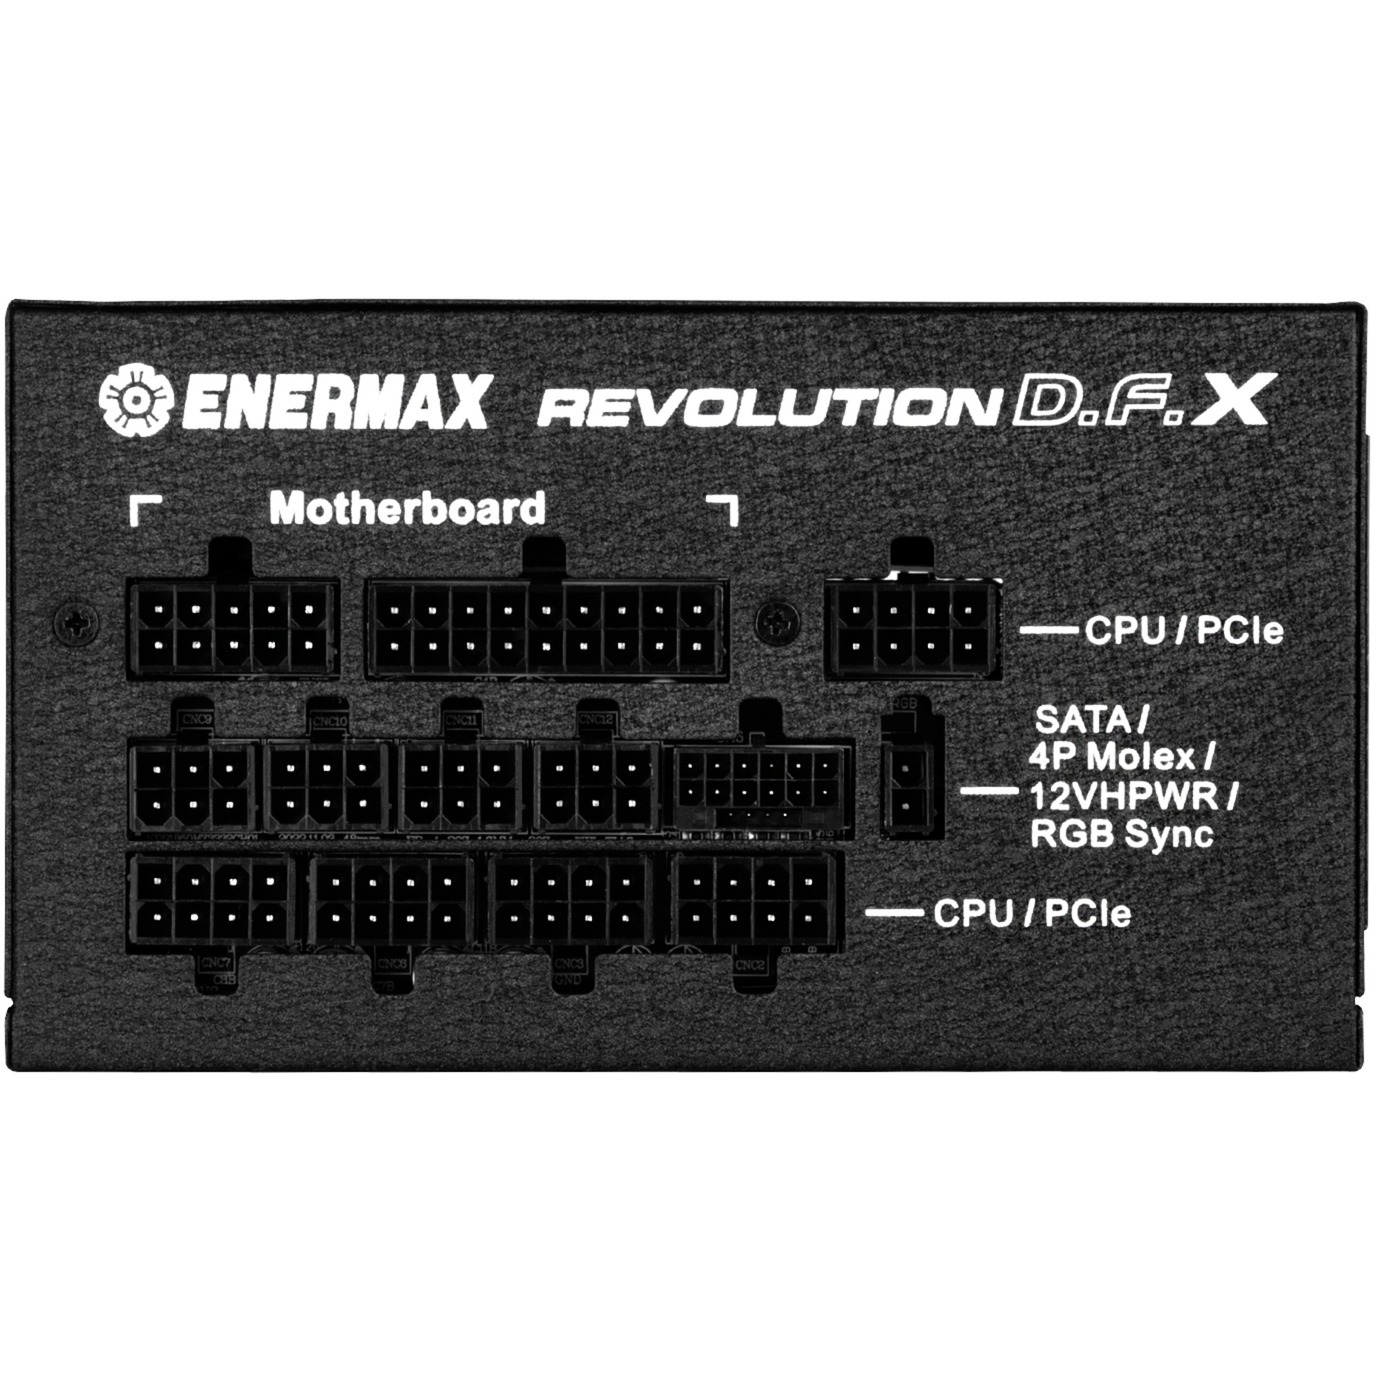 PC-Netzteil ENERMAX Watt Netzteil PC D.F.X 1050 REVOLUTION 1050W